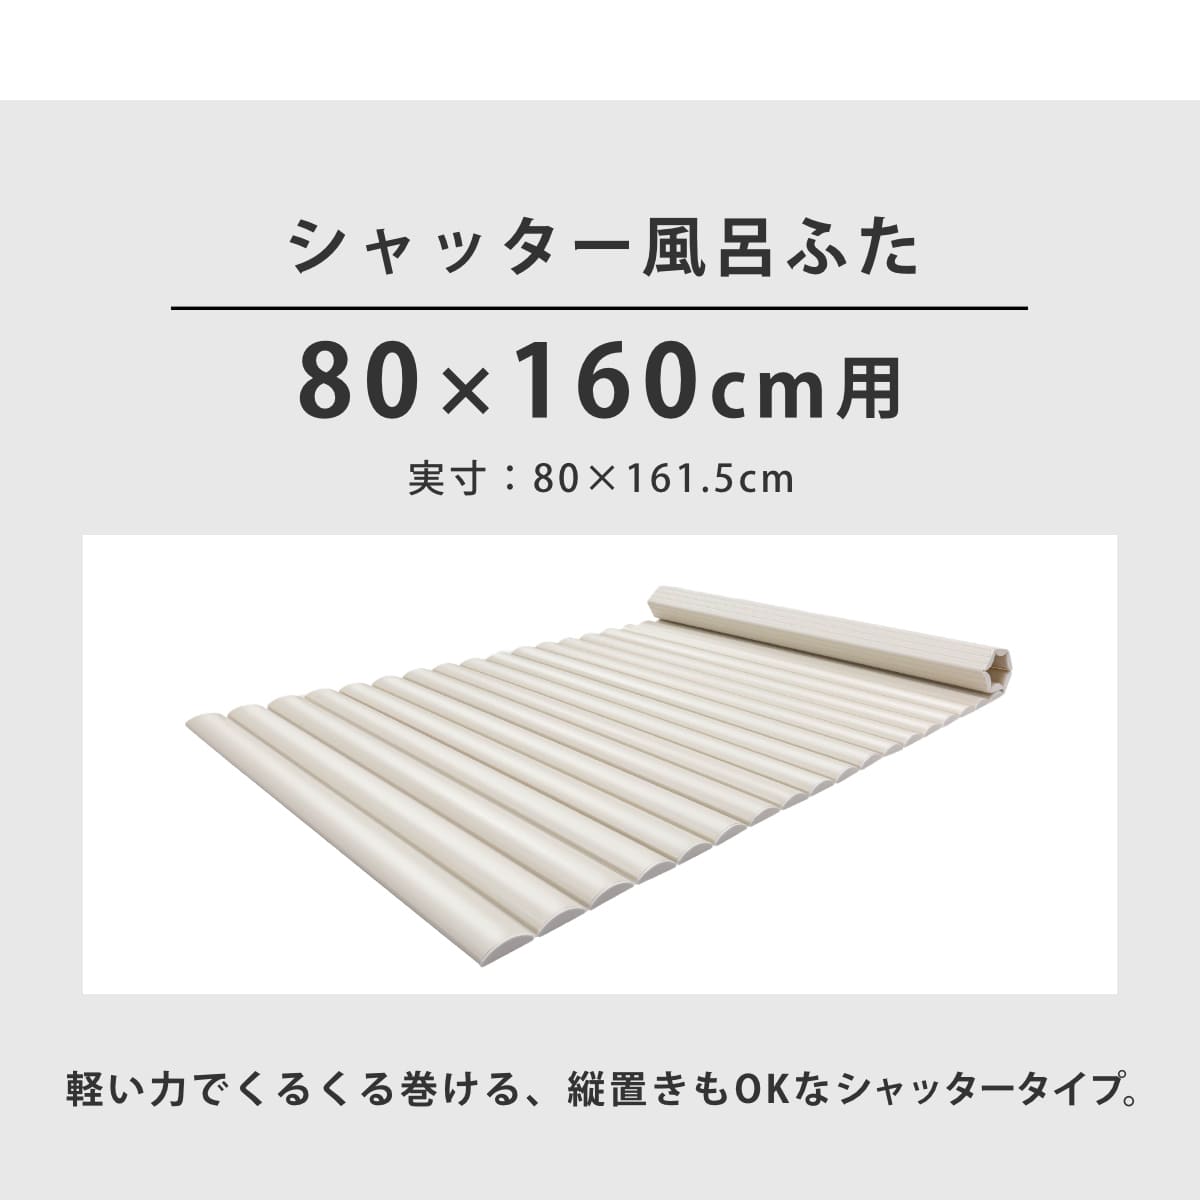 シャッター式風呂ふた 巻きフタ ブルー SGマーク認定 日本製